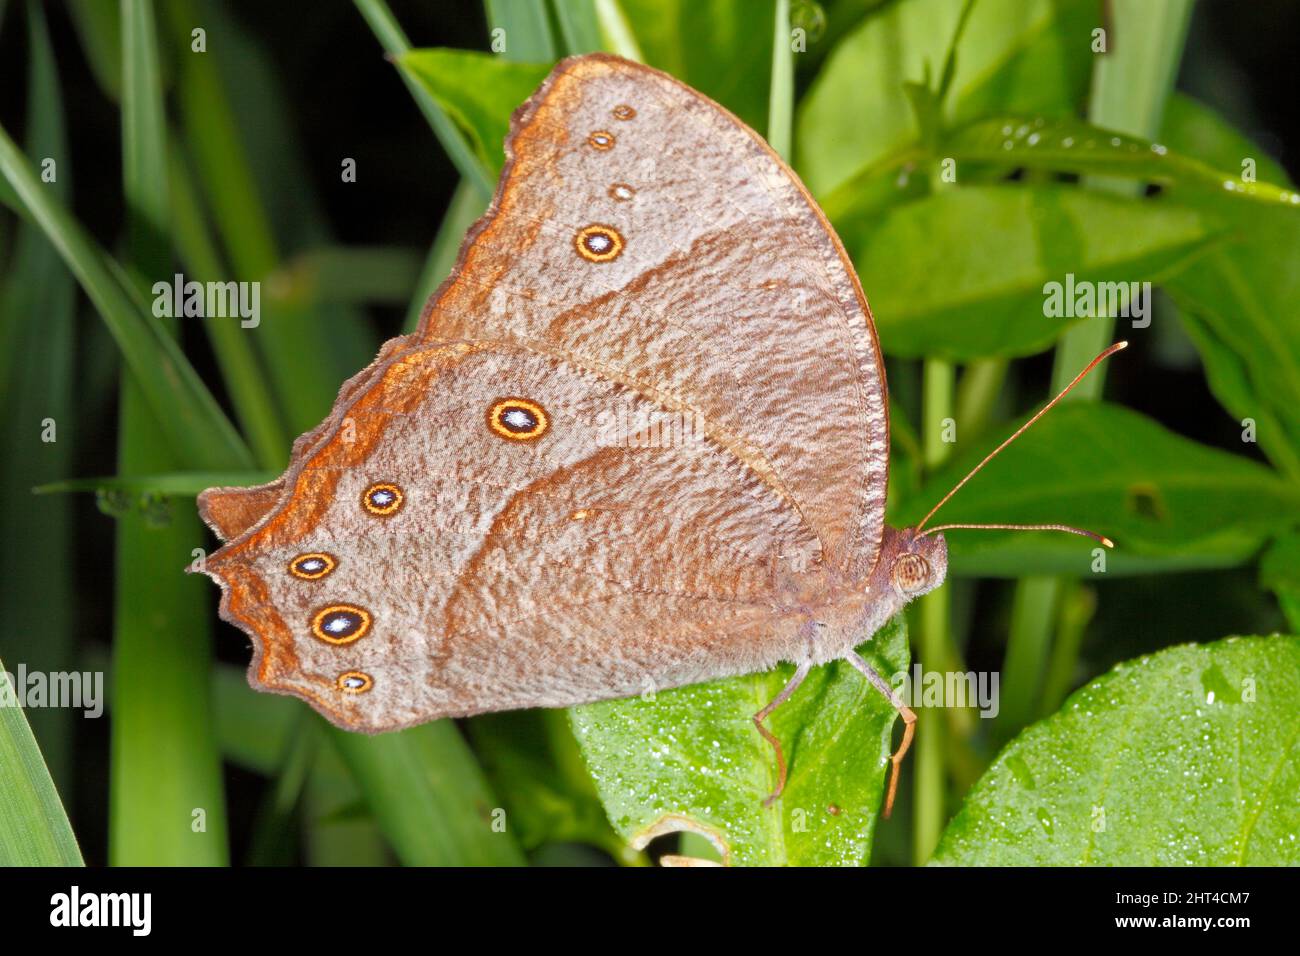 Serata comune farfalla marrone, Melanitis leda. Sono crepuscolari, sono attivi intorno all'alba, al crepuscolo e alla sera. Durante il giorno si riposano Foto Stock